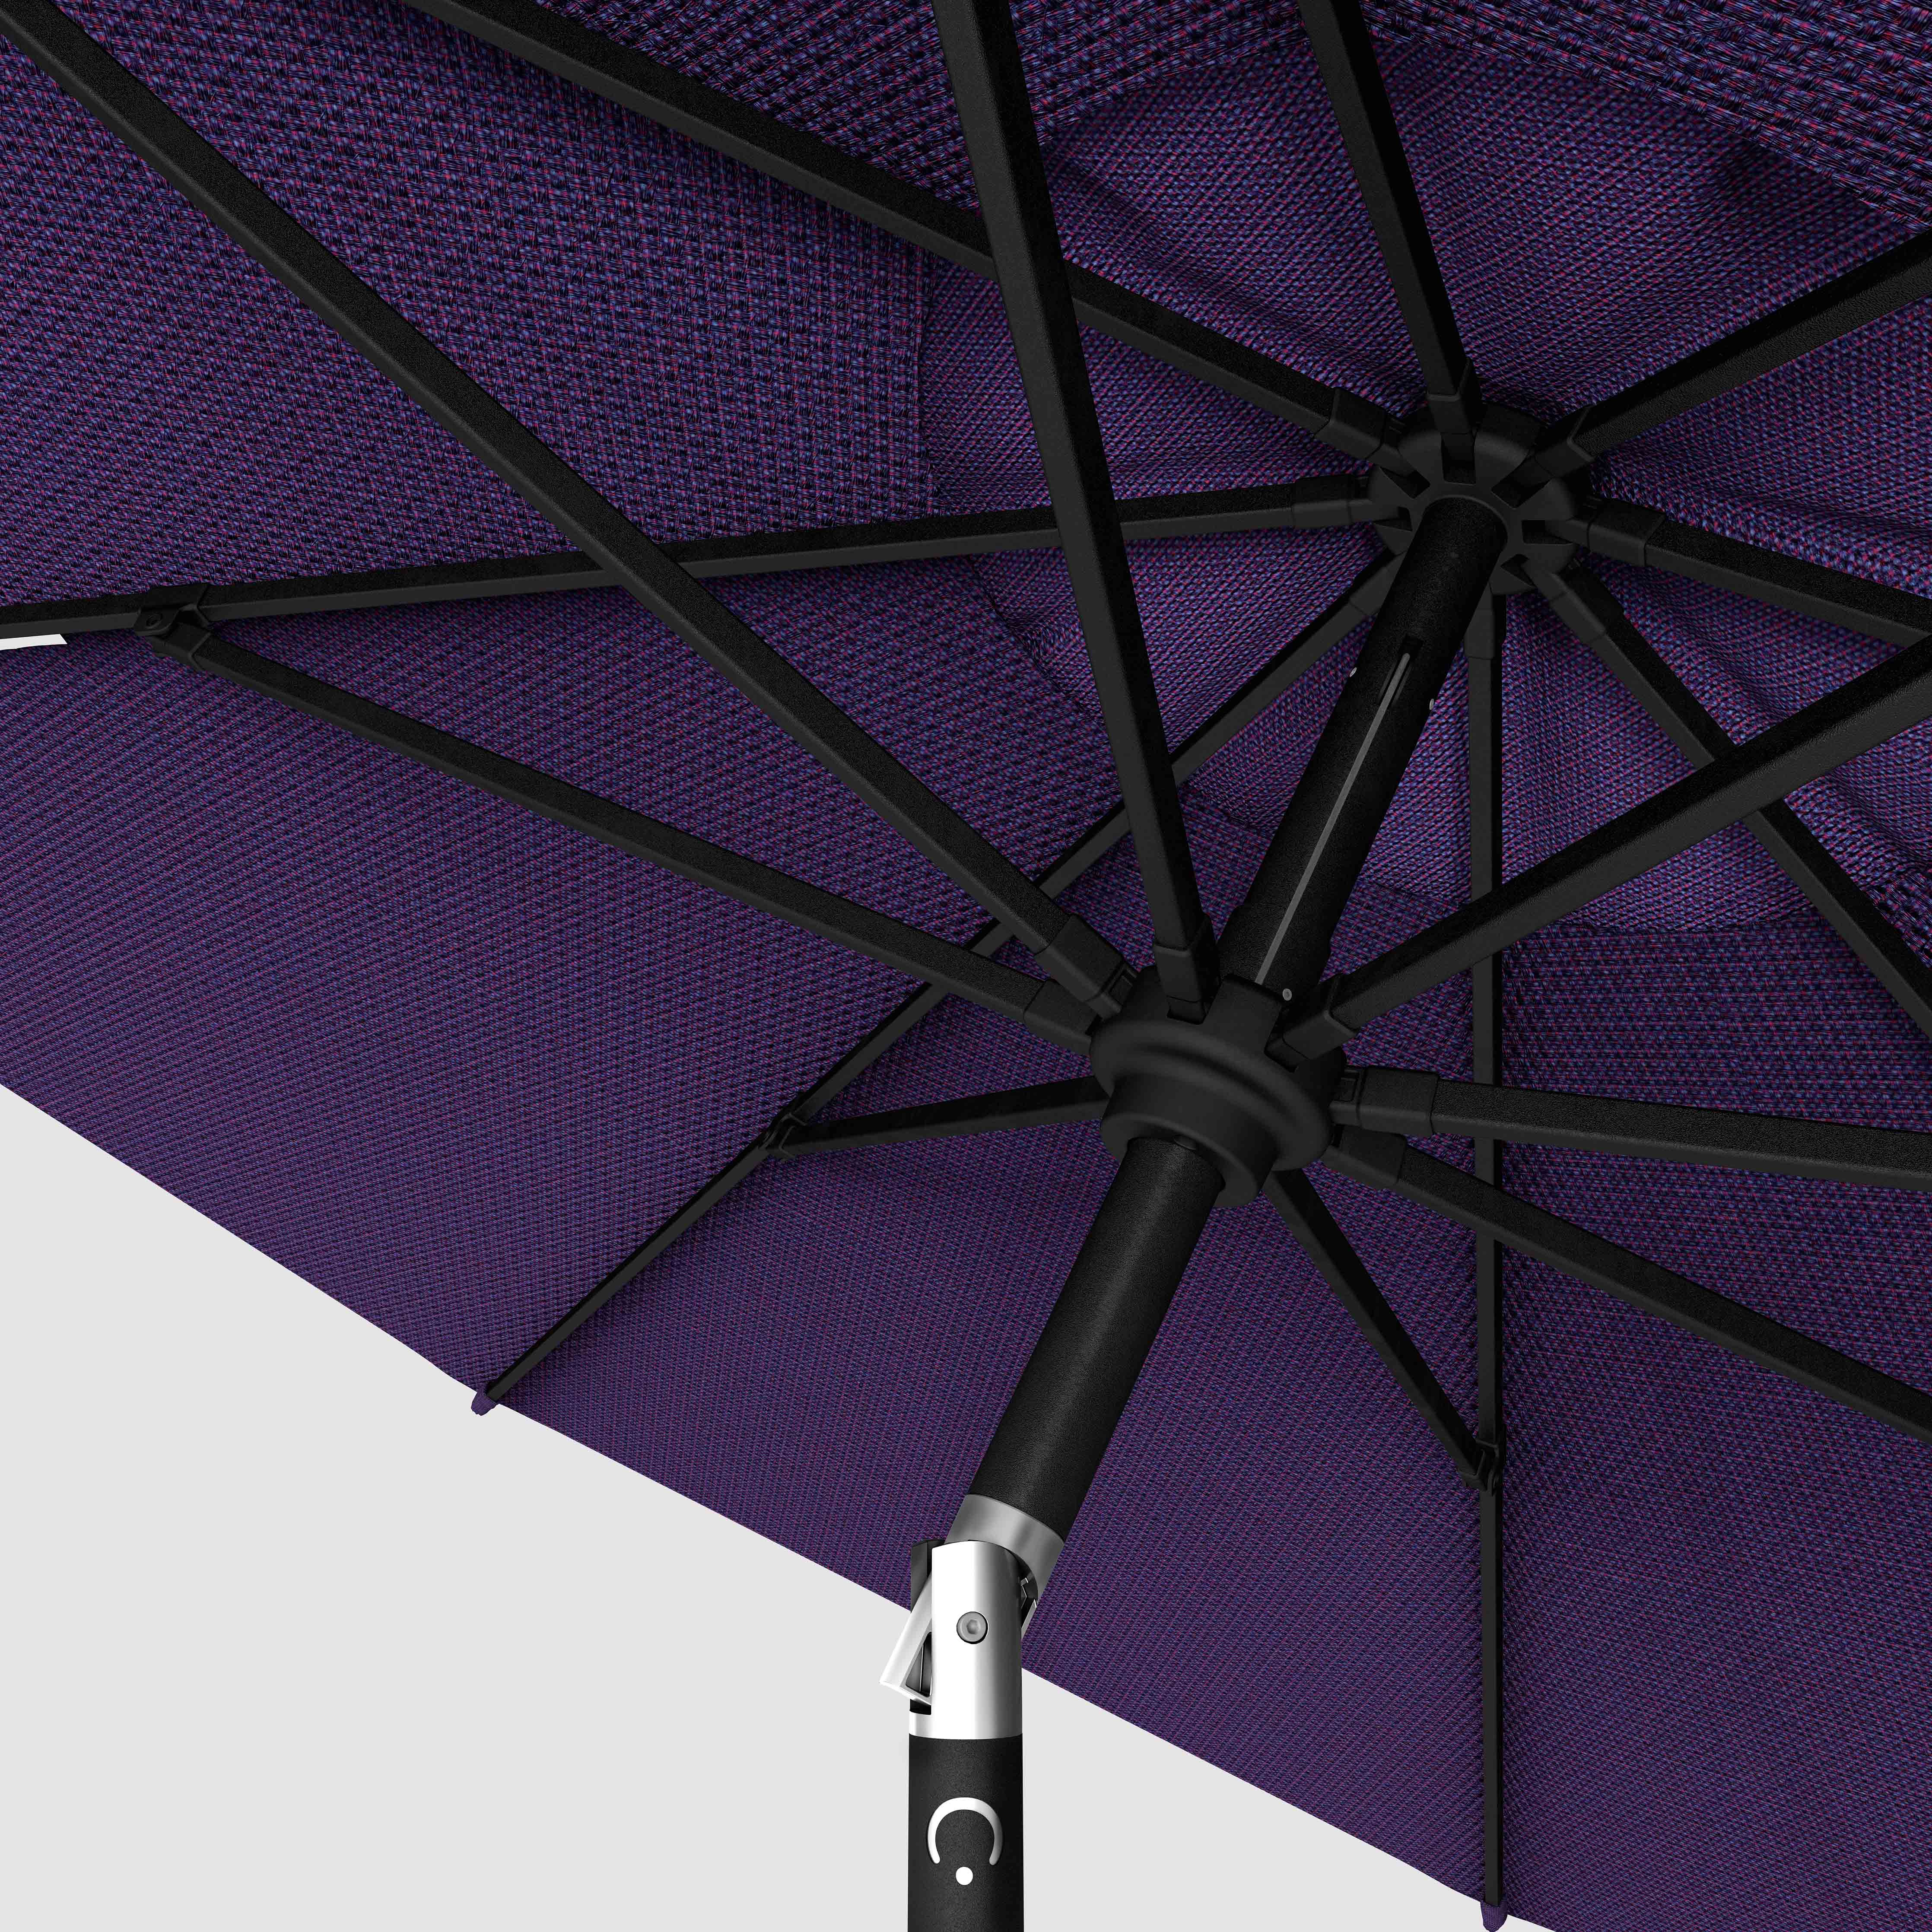 The Lean™ - Sunbrella Bengali Purple